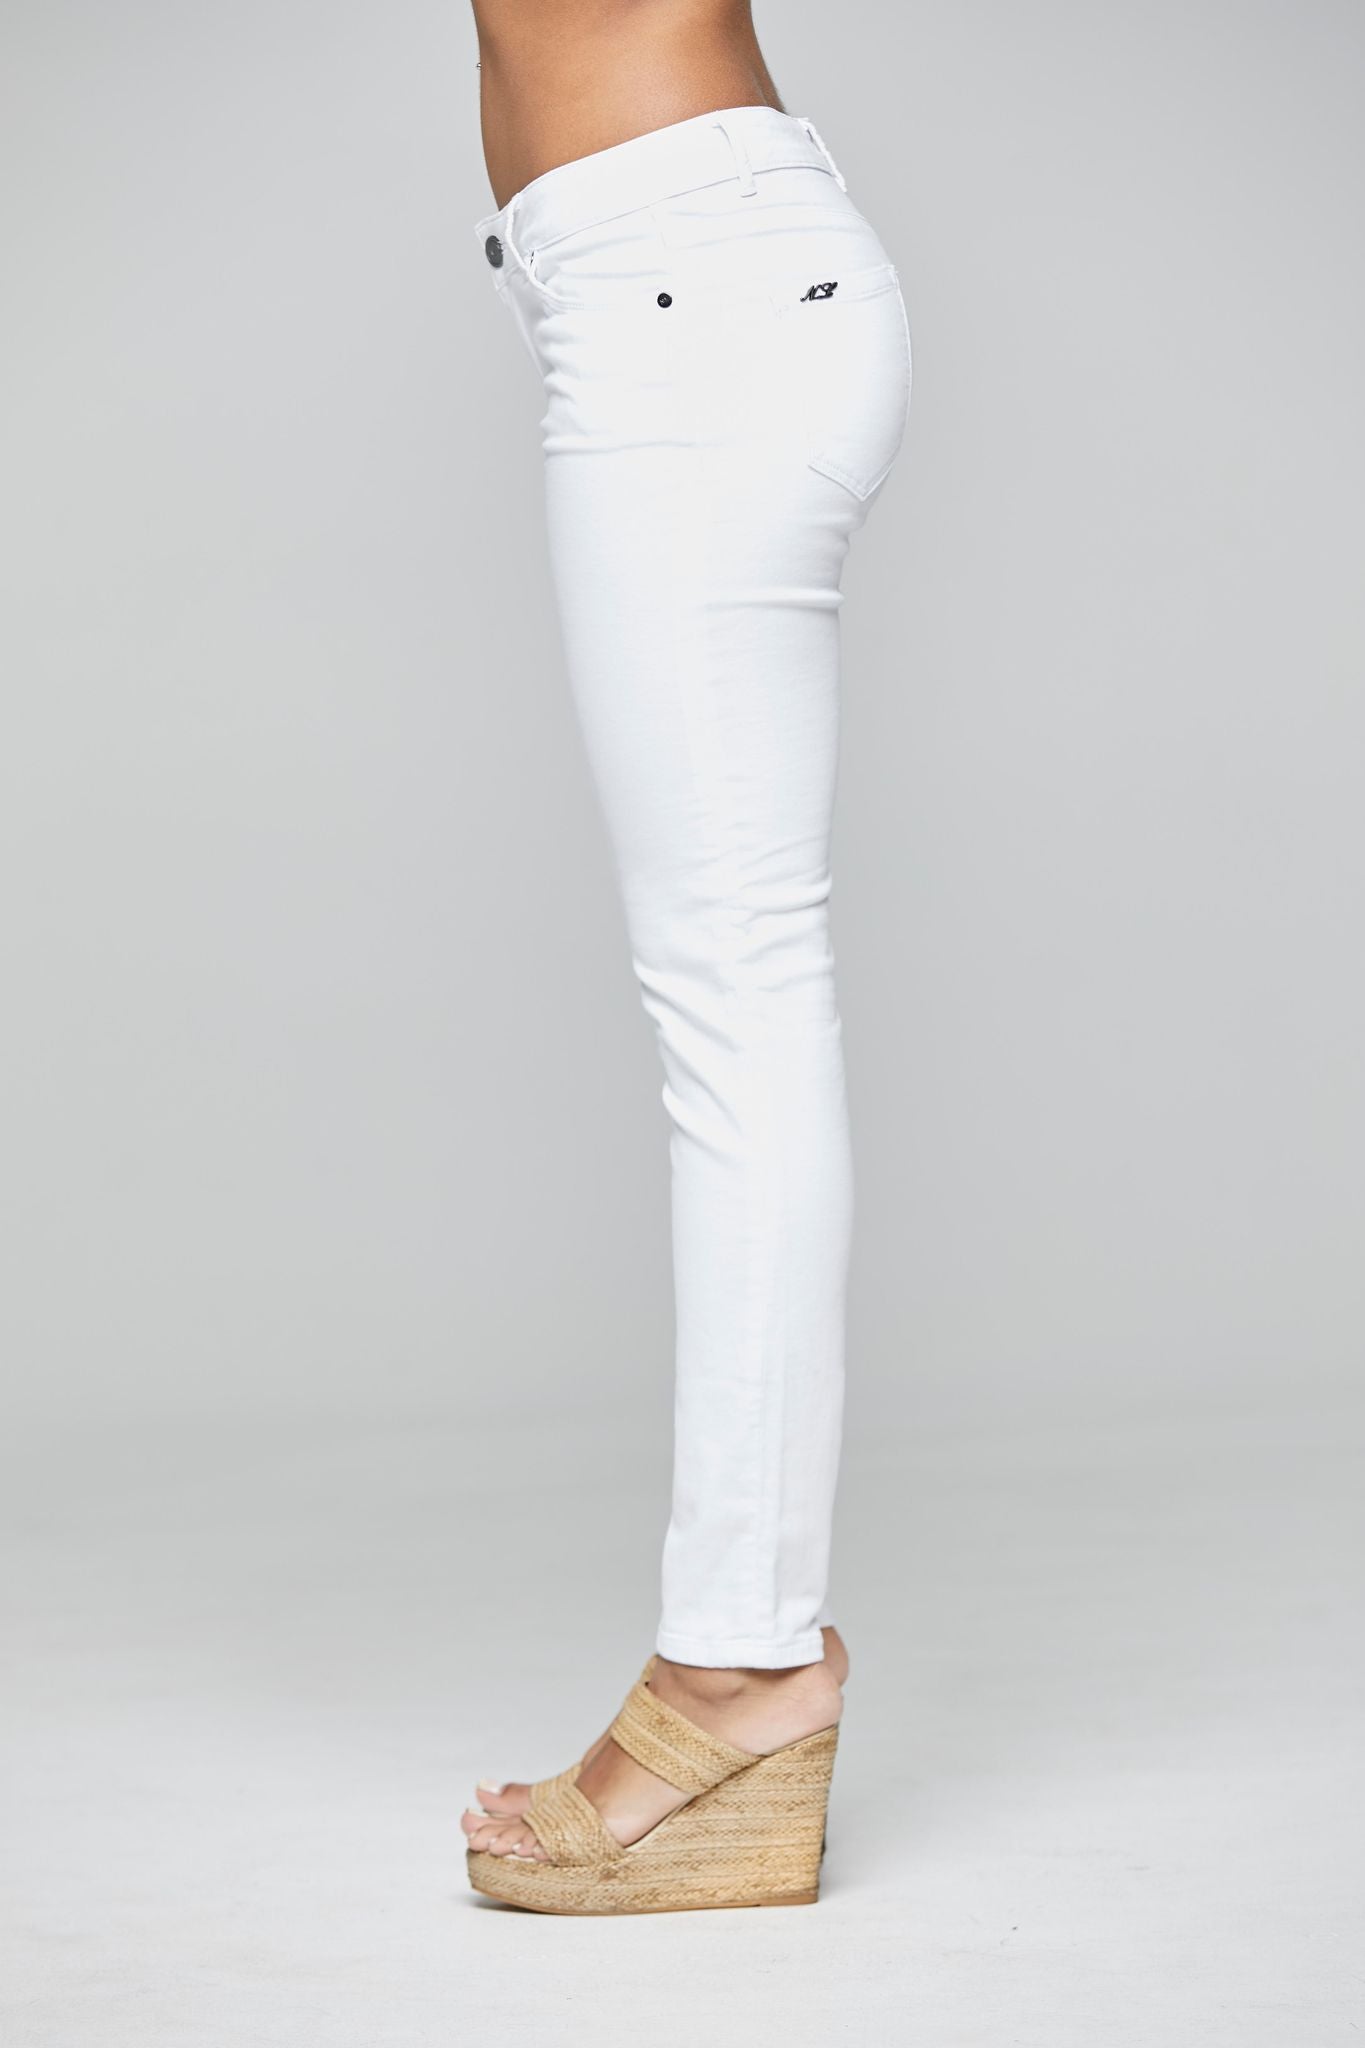 Shop Sloane HB Skinny Jean in White - New London Jeans